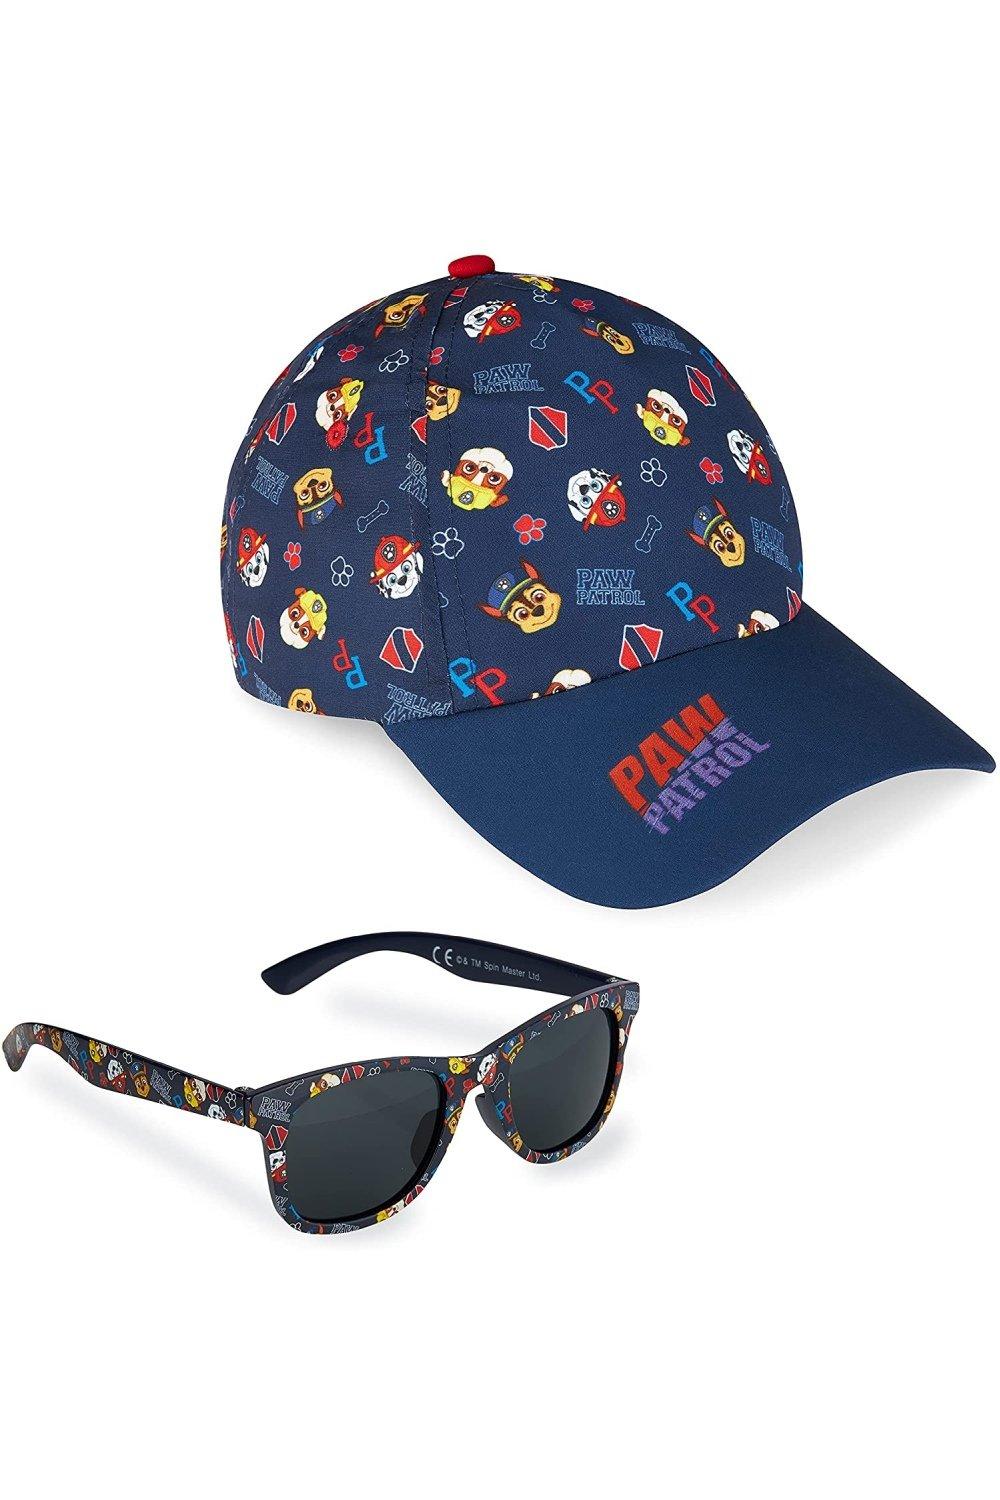 Бейсболка и солнцезащитные очки Aop Paw Patrol, синий бейсбольная кепка polk летняя кепка индивидуальная шляпа от солнца